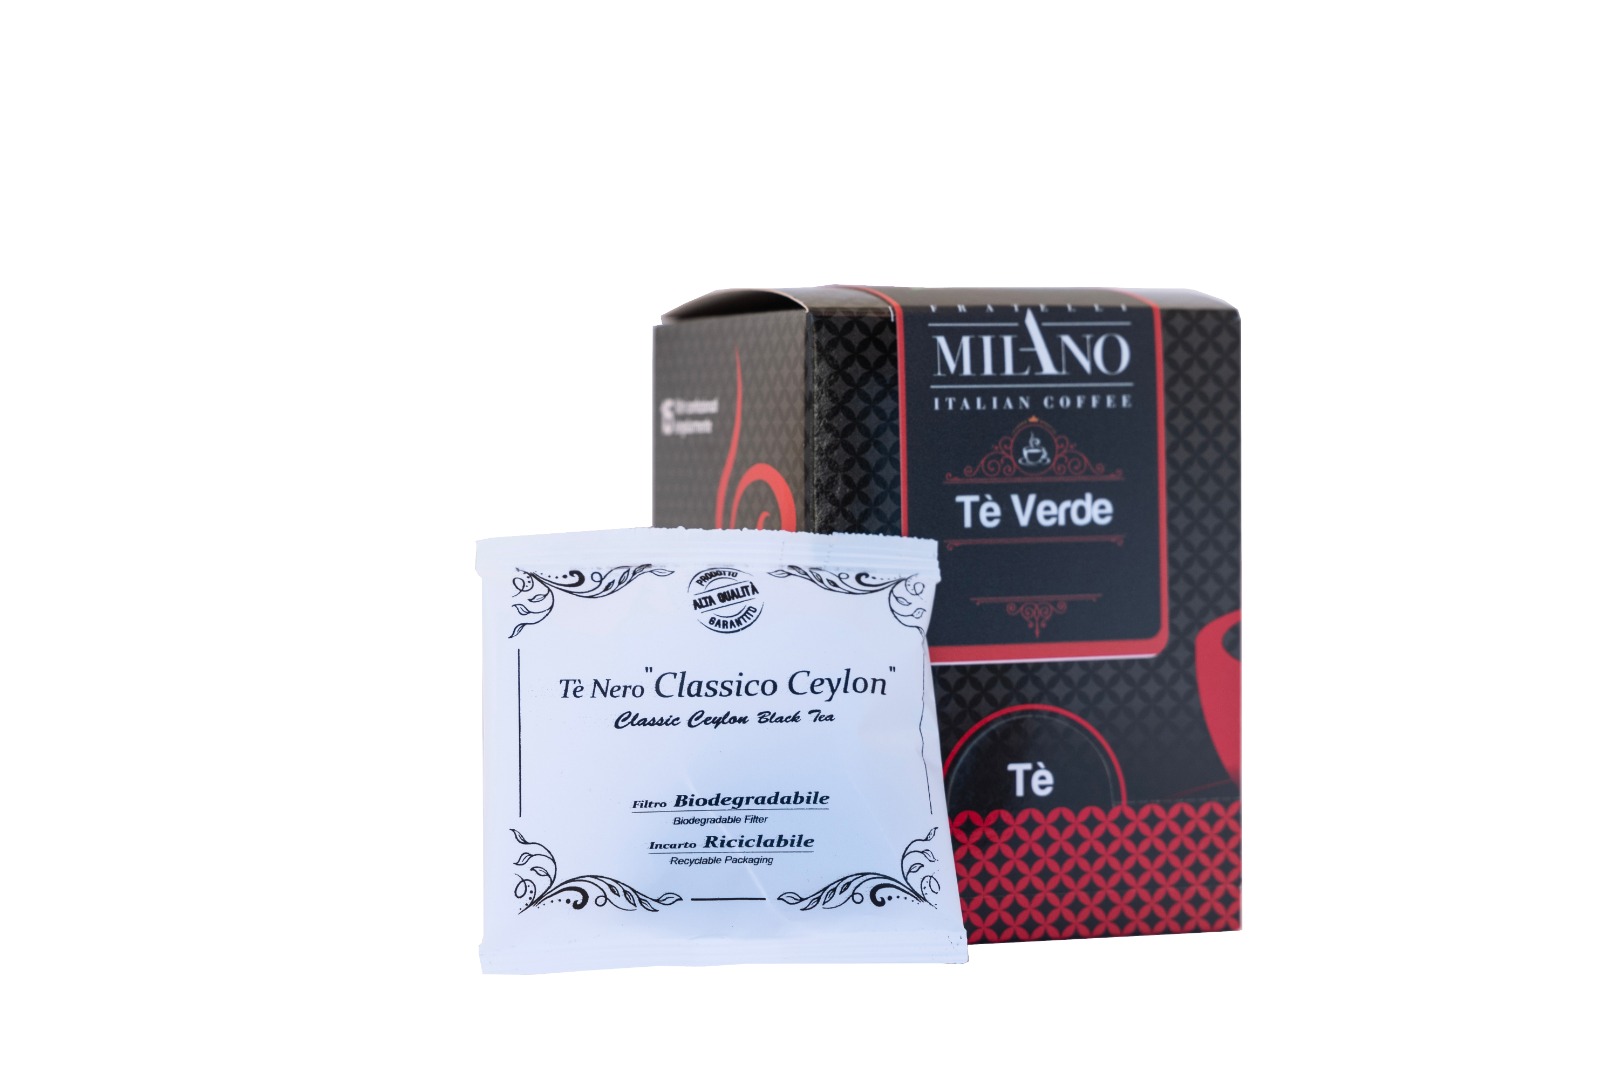 Tè Nero Ceylon 15 filtri / Fratelli Milano Italian Coffee